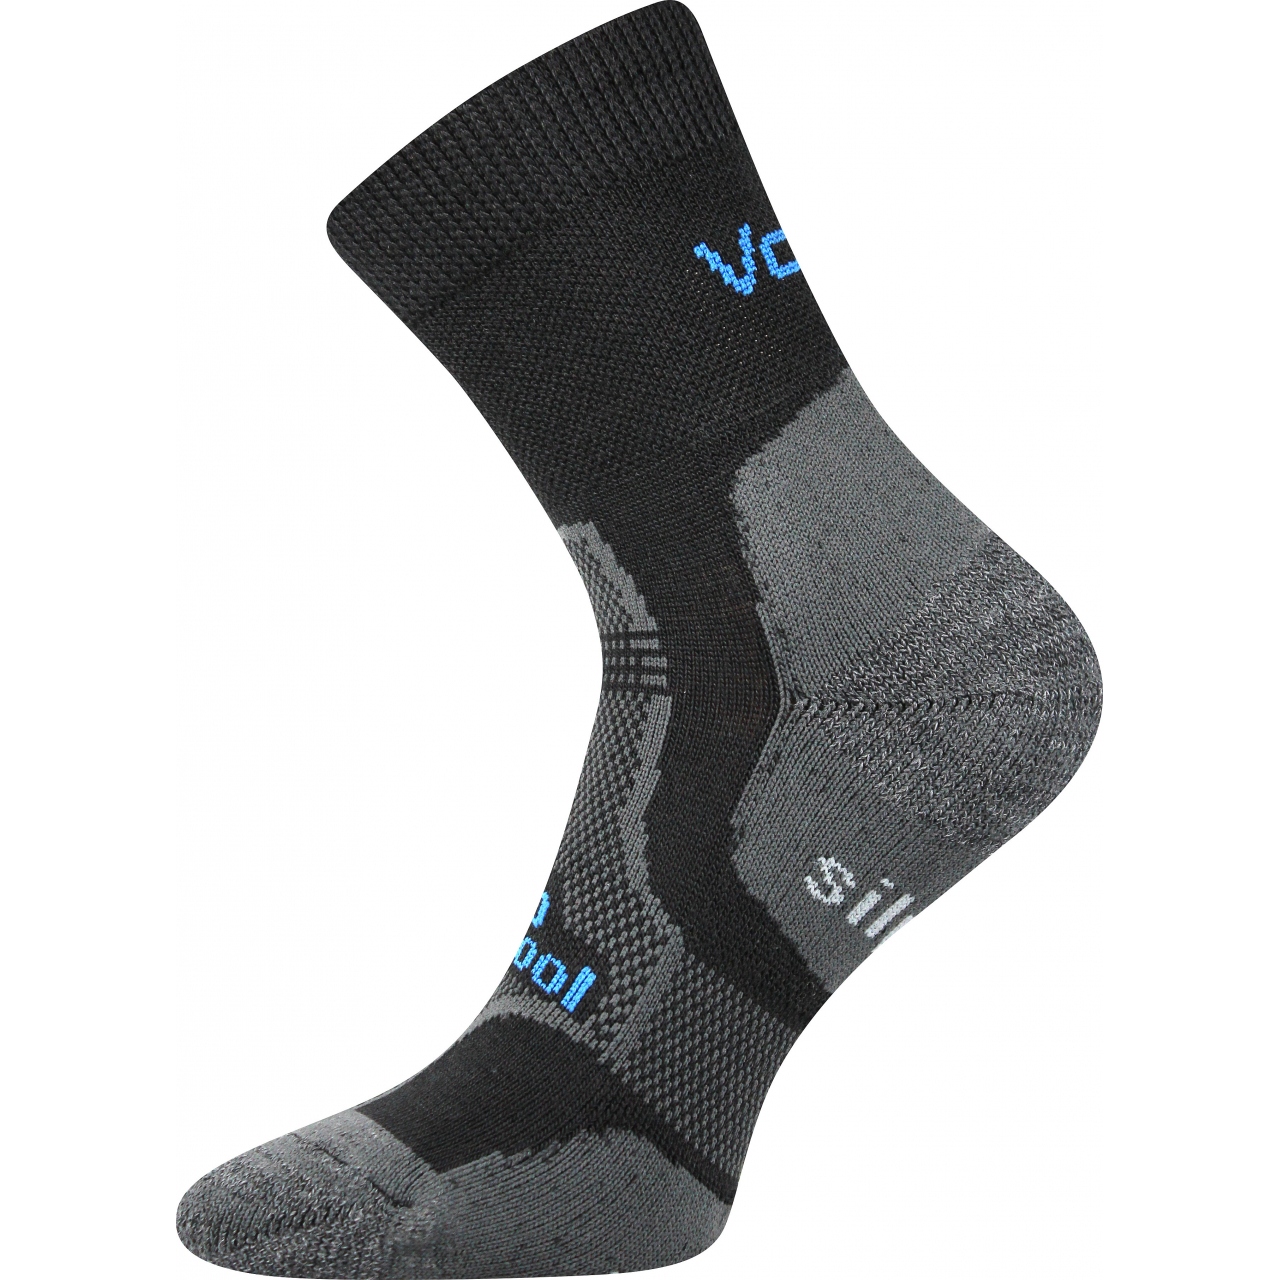 Ponožky unisex zimní Voxx Granit - černé, 47-50